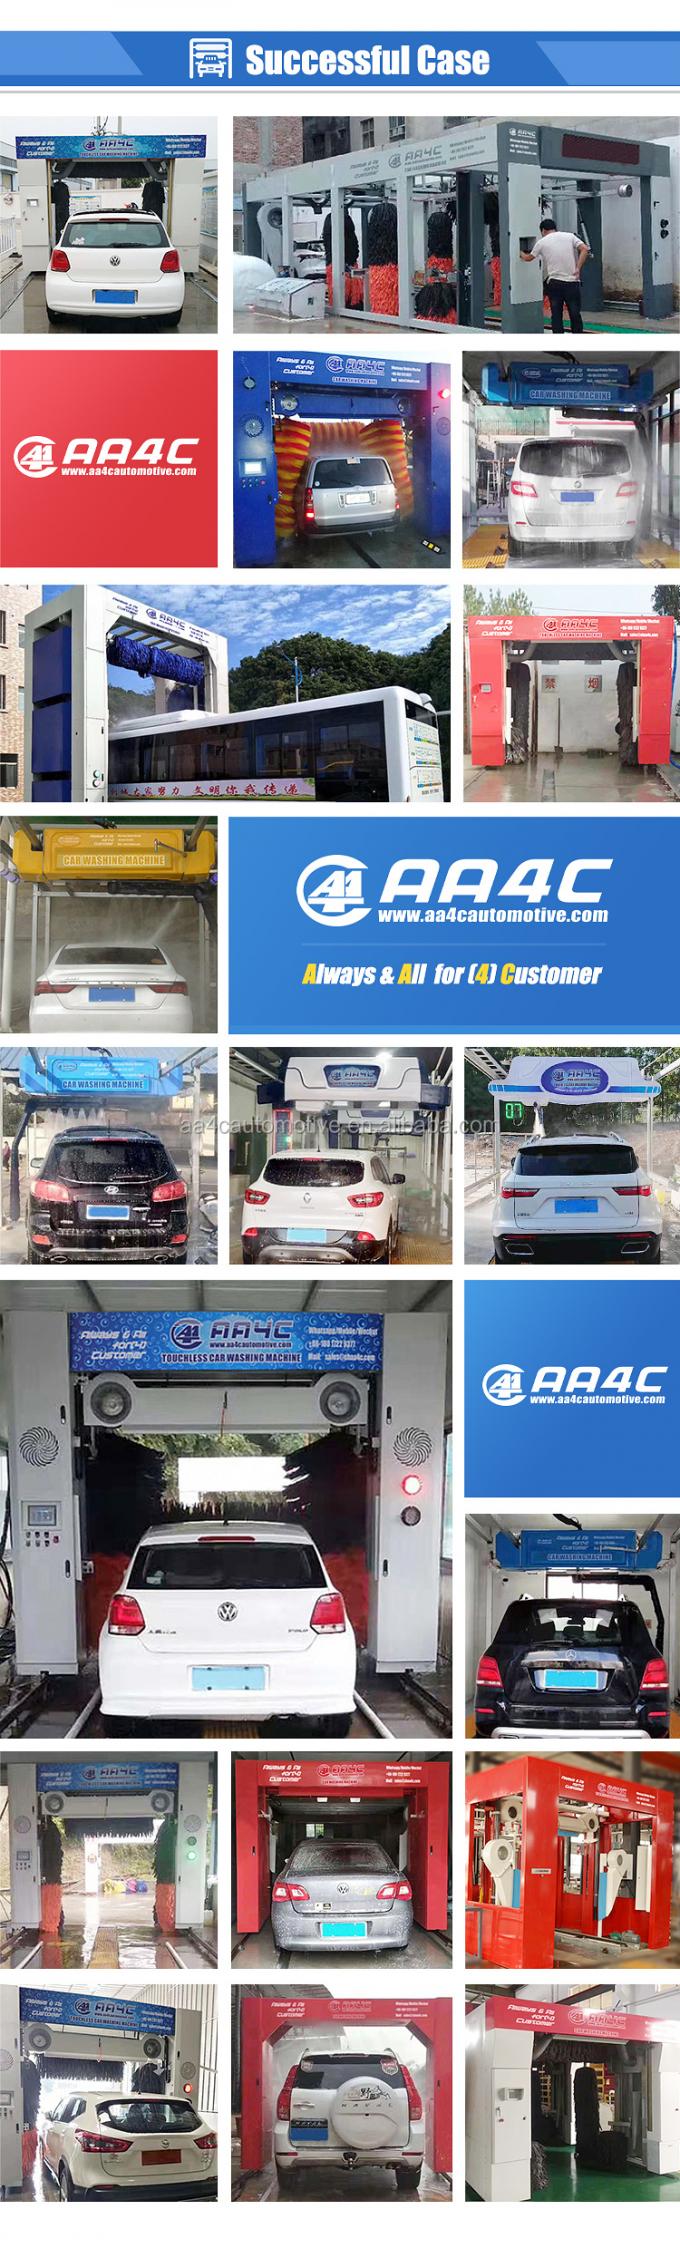 La lavadora automática del coche de los cepillos de la lavadora 9 del coche del túnel de AA4C cepilla la lavadora del coche